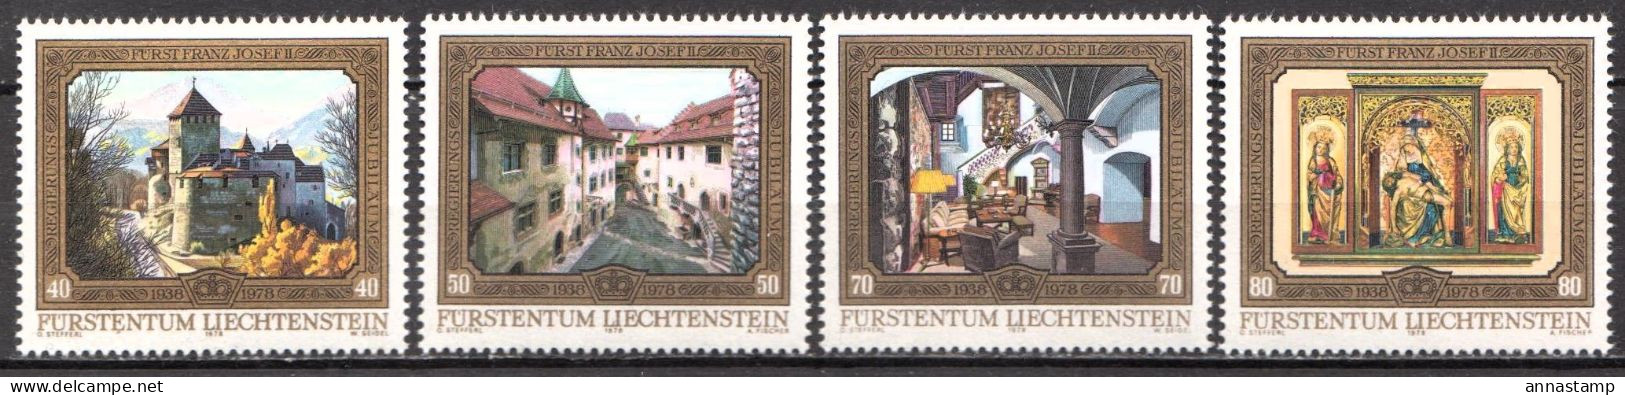 Liechtenstein MNH Set - Châteaux